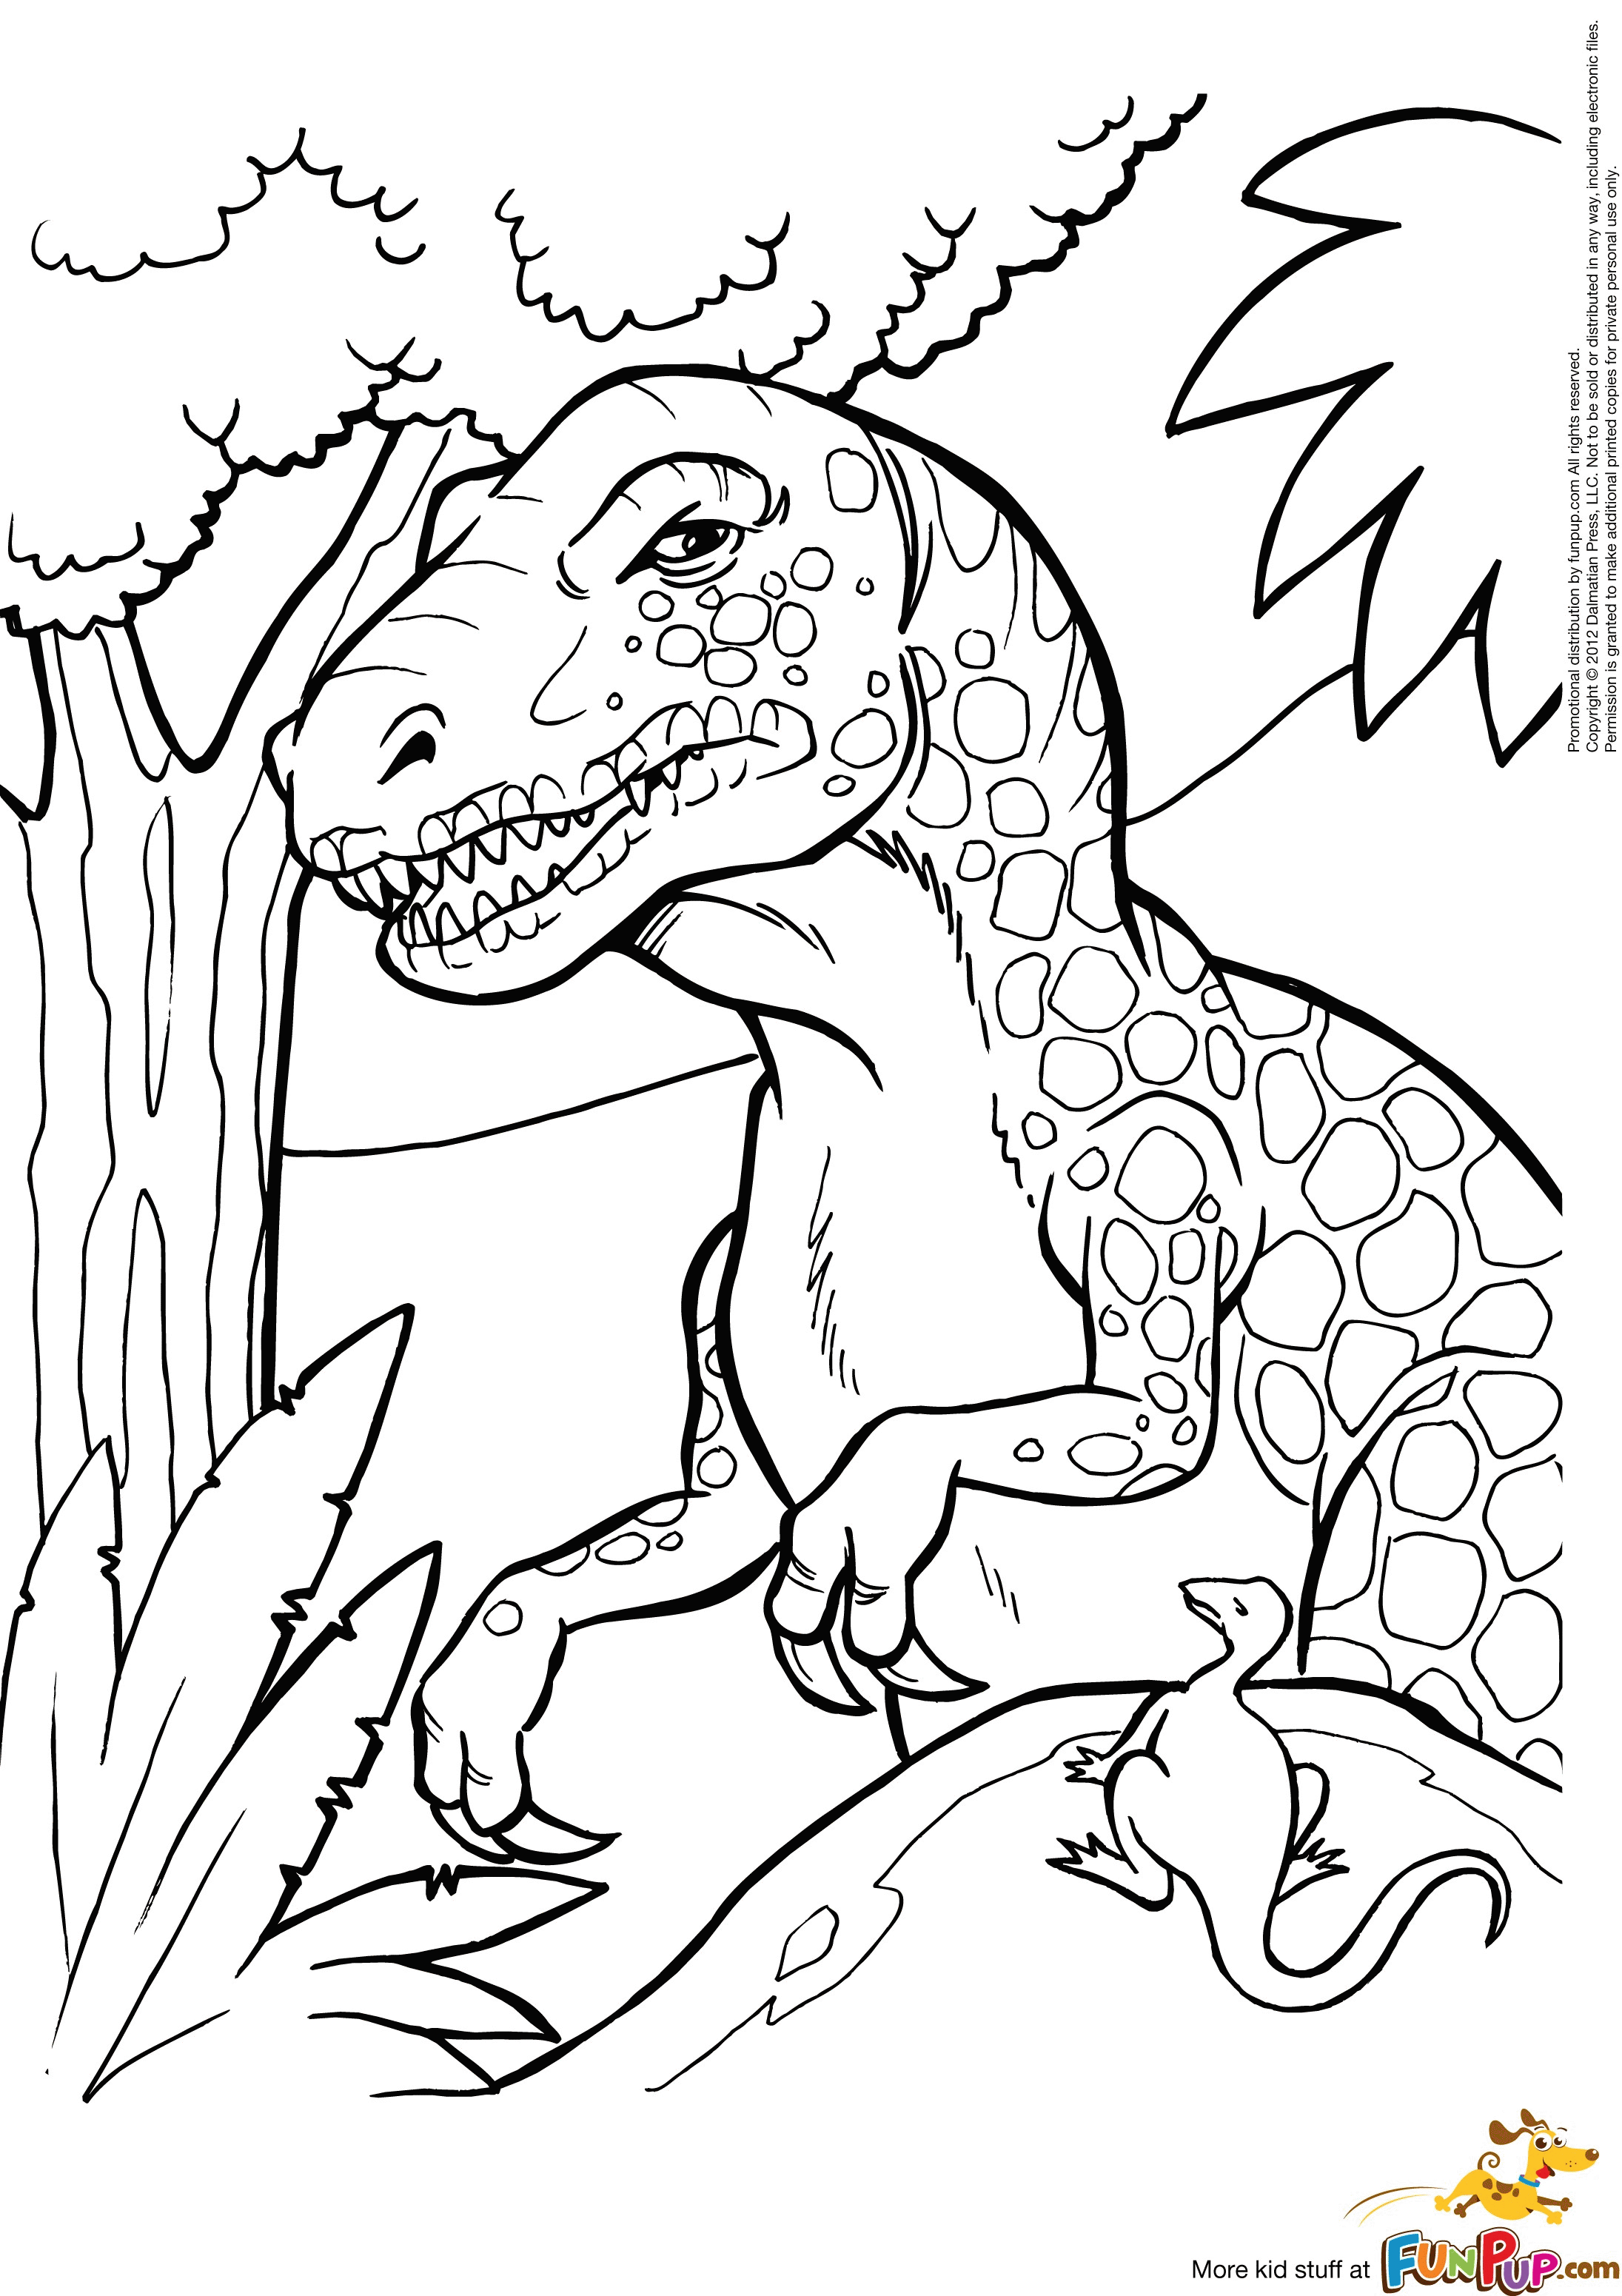 Динозавр раскраска распечатать а4. Динозавры / раскраска. Динозавр раскраска для детей. Рисунок динозавра для раскрашивания. Раскраска "Динозаврики".